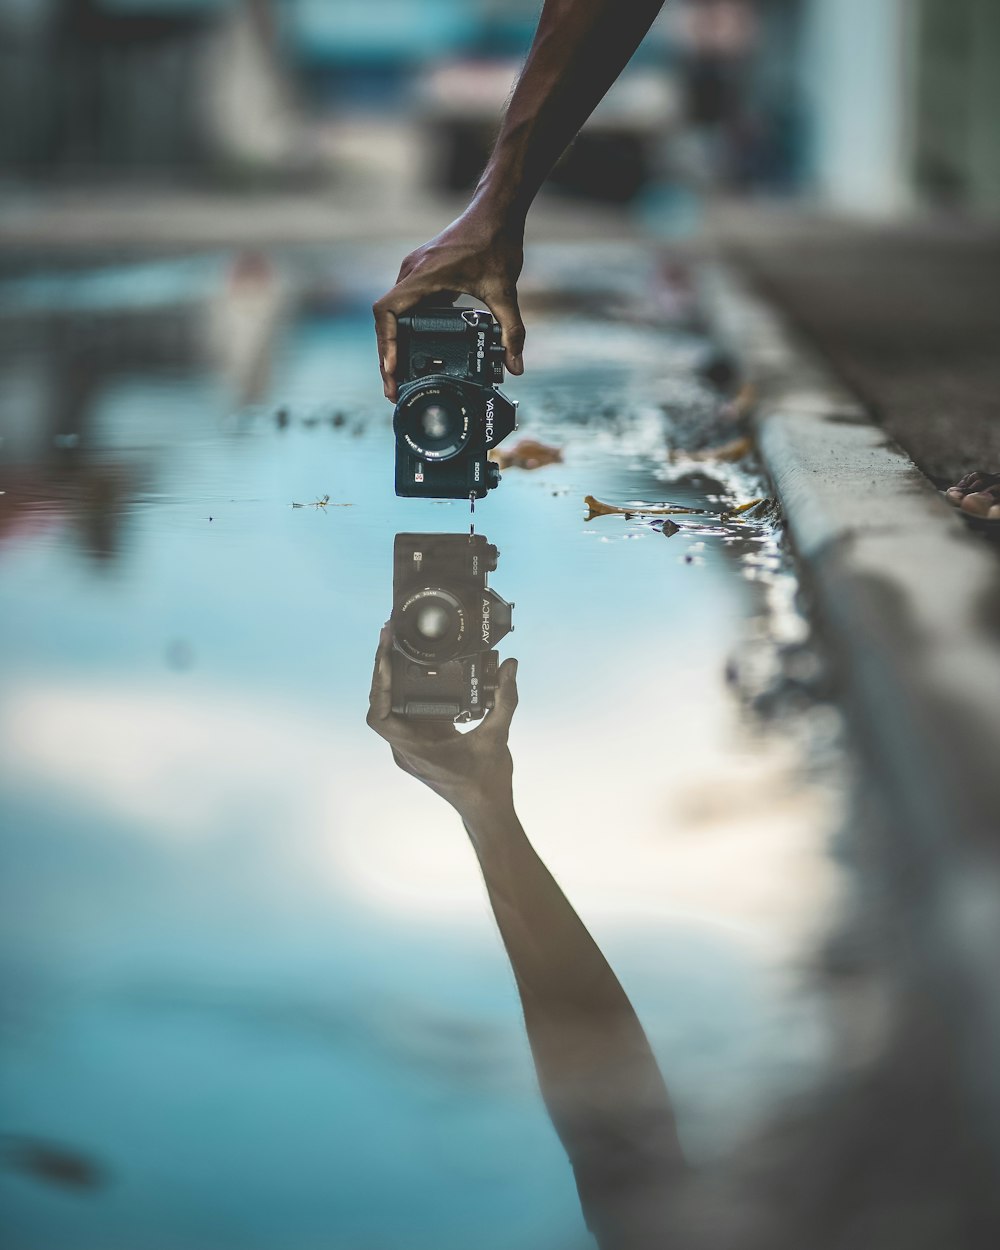 Fotografía en espejo de una persona que sostiene una cámara DSLR con reflejo de agua